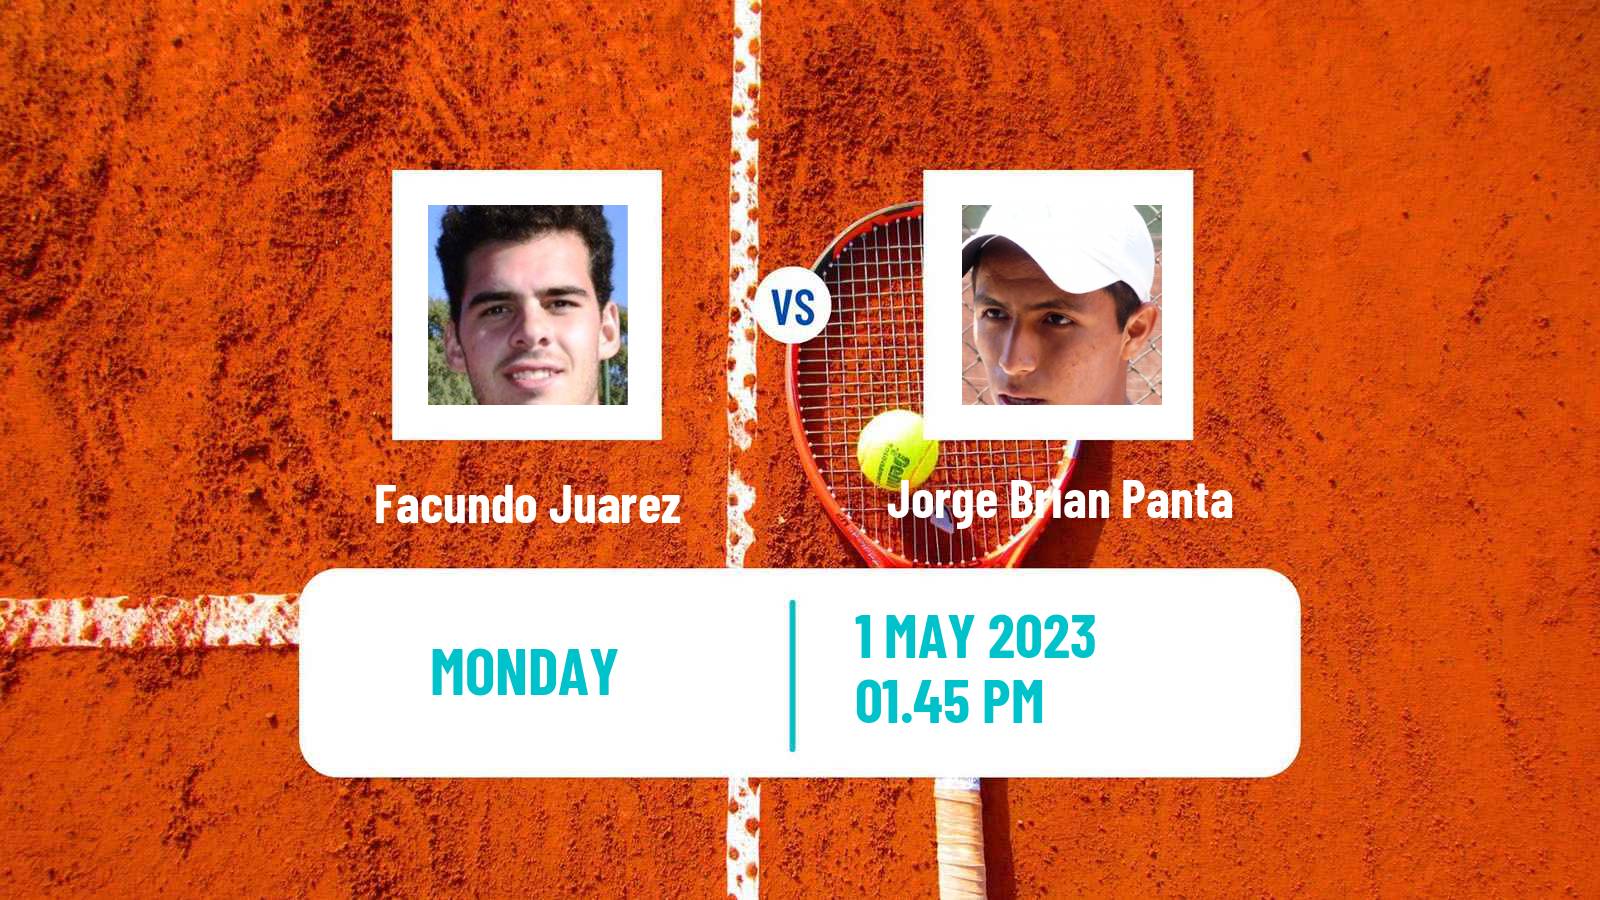 Tennis ATP Challenger Facundo Juarez - Jorge Brian Panta